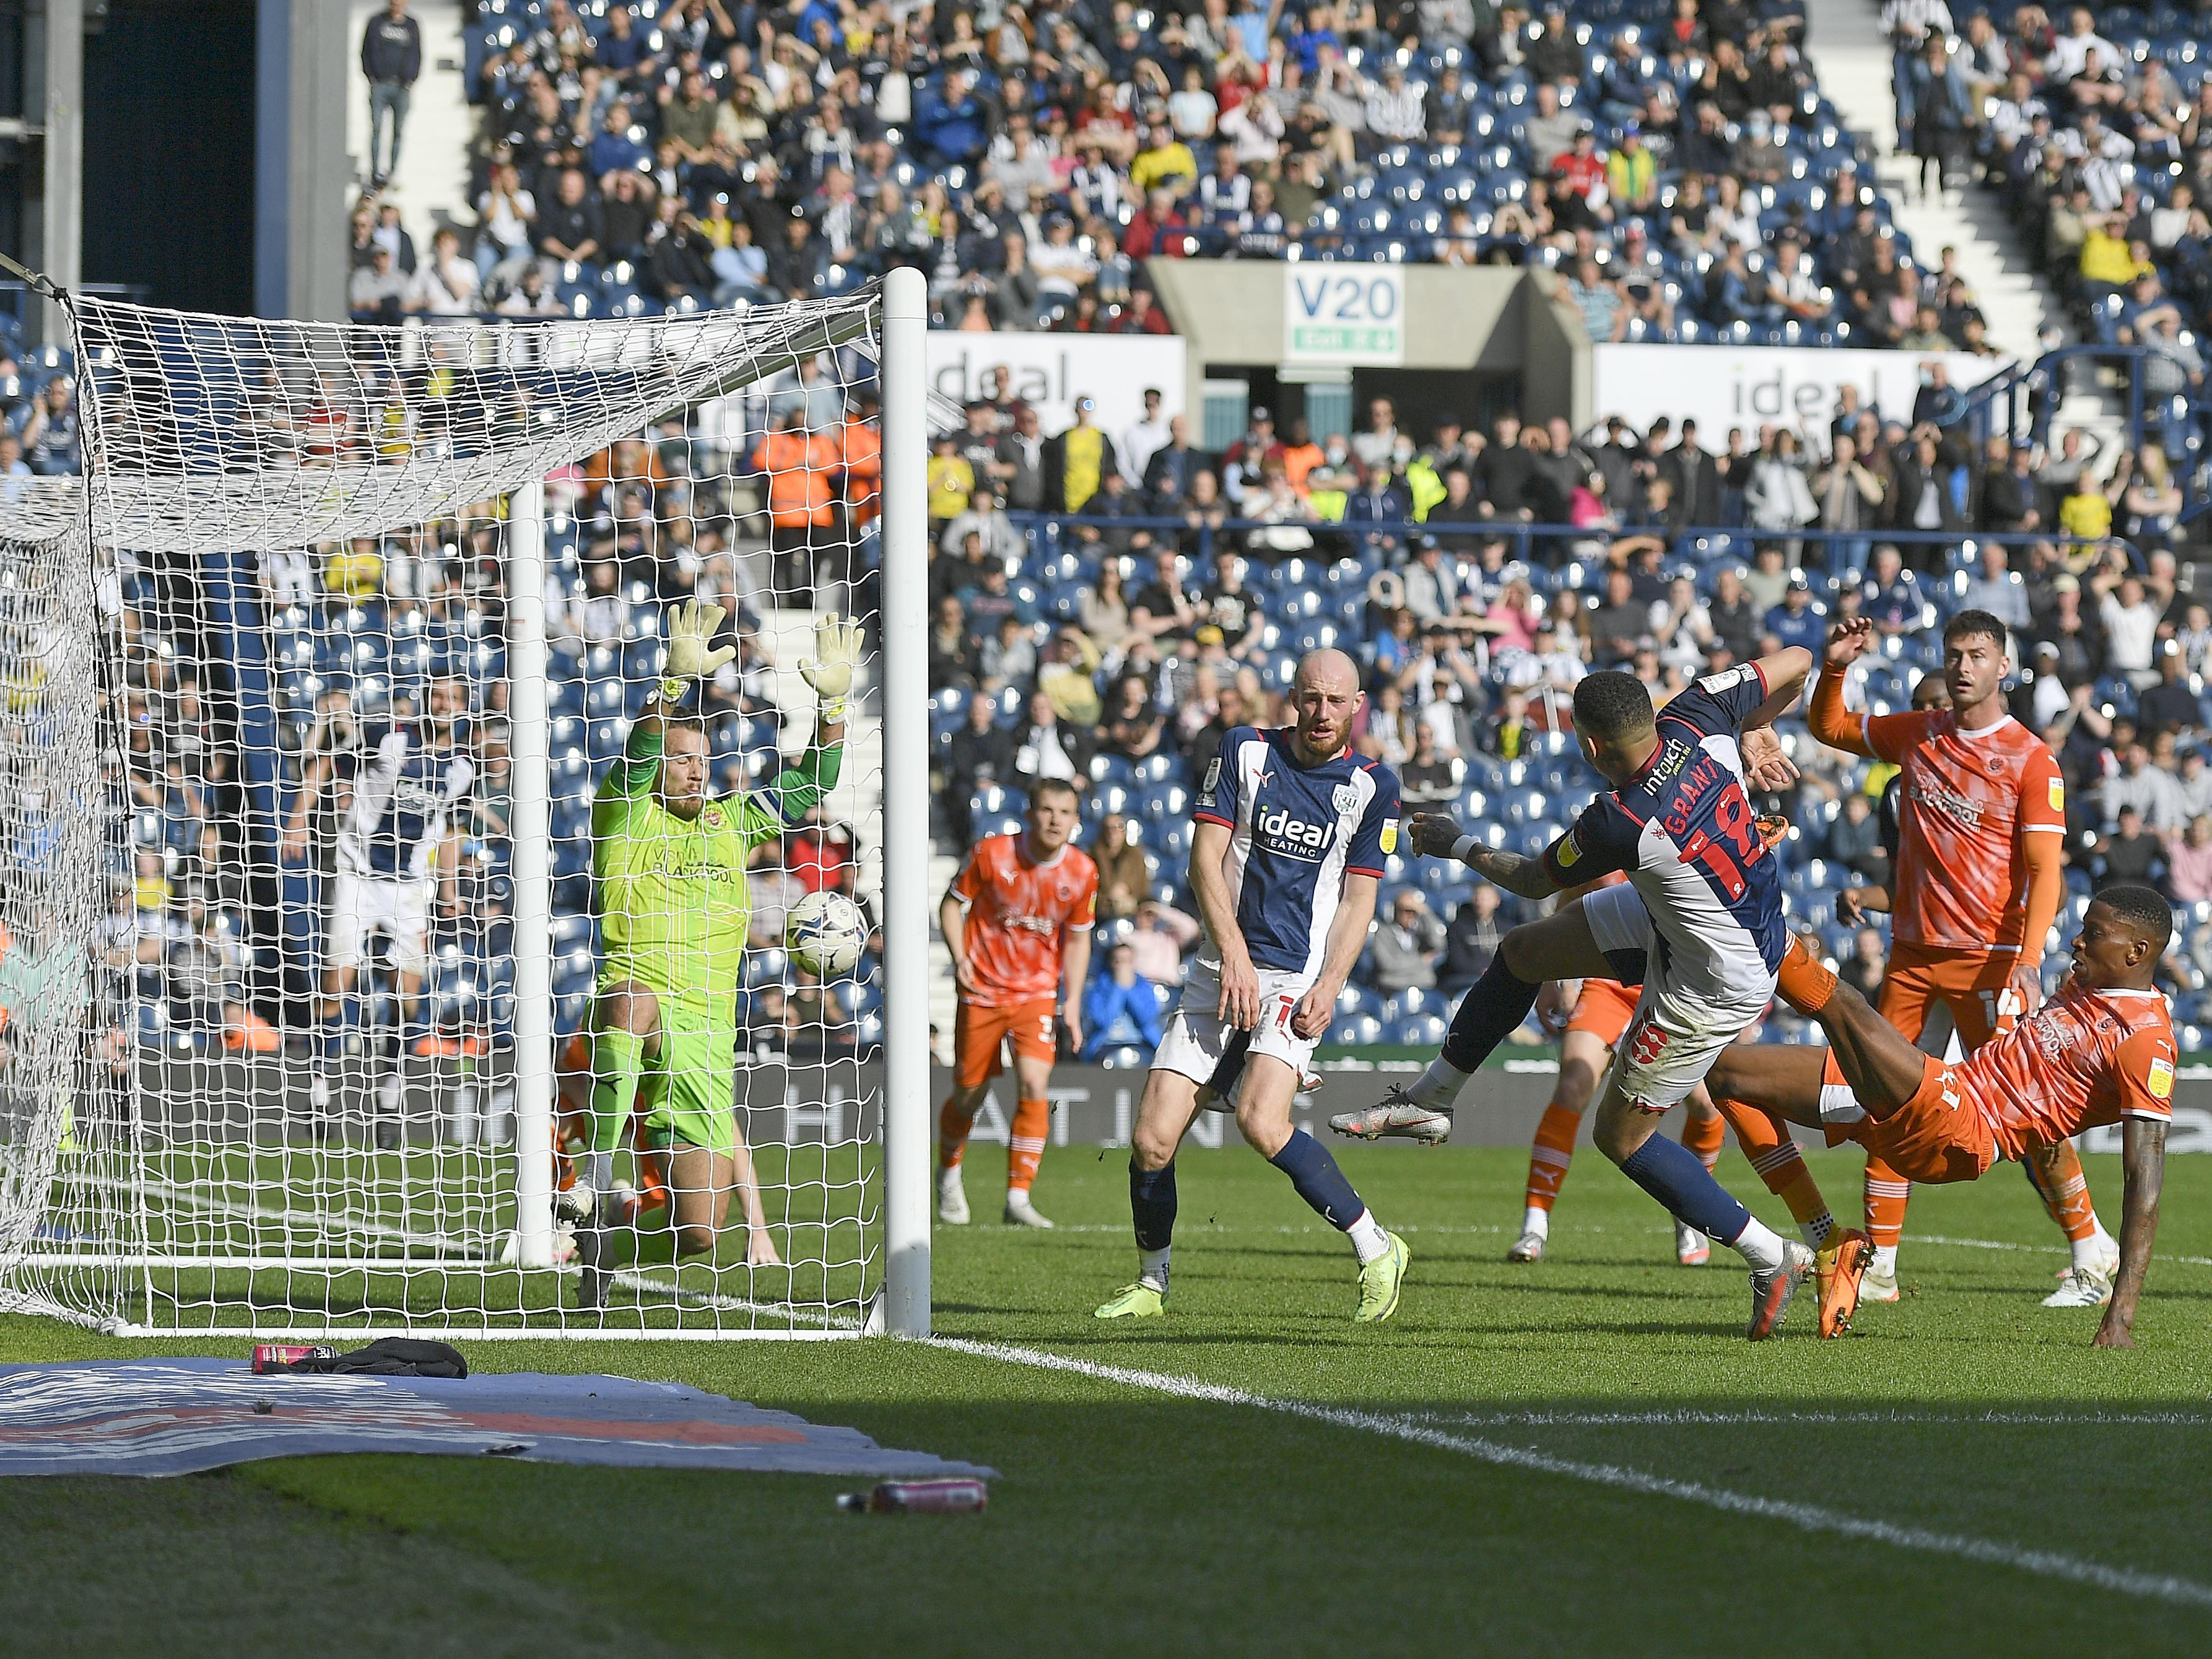 Grant's winning goal against Blackpool